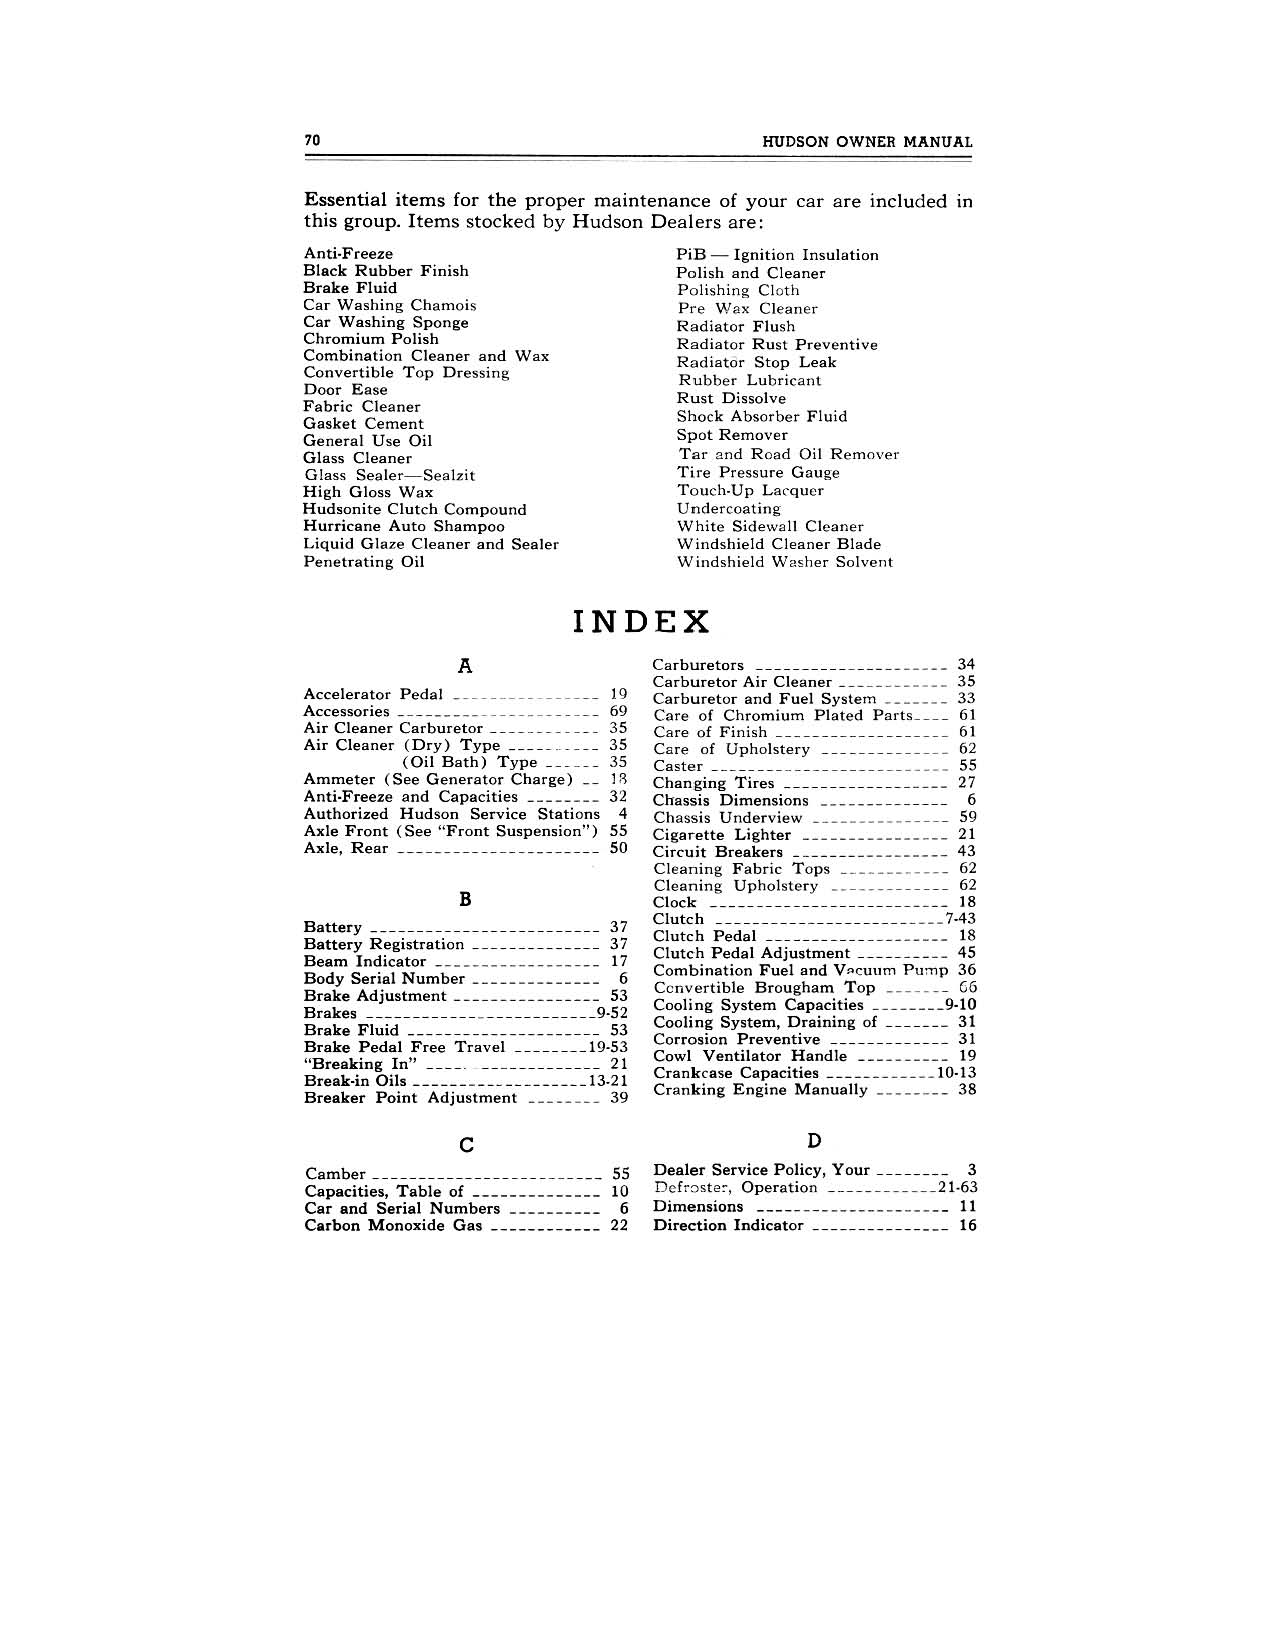 1949 Hudson Owners Manual-72